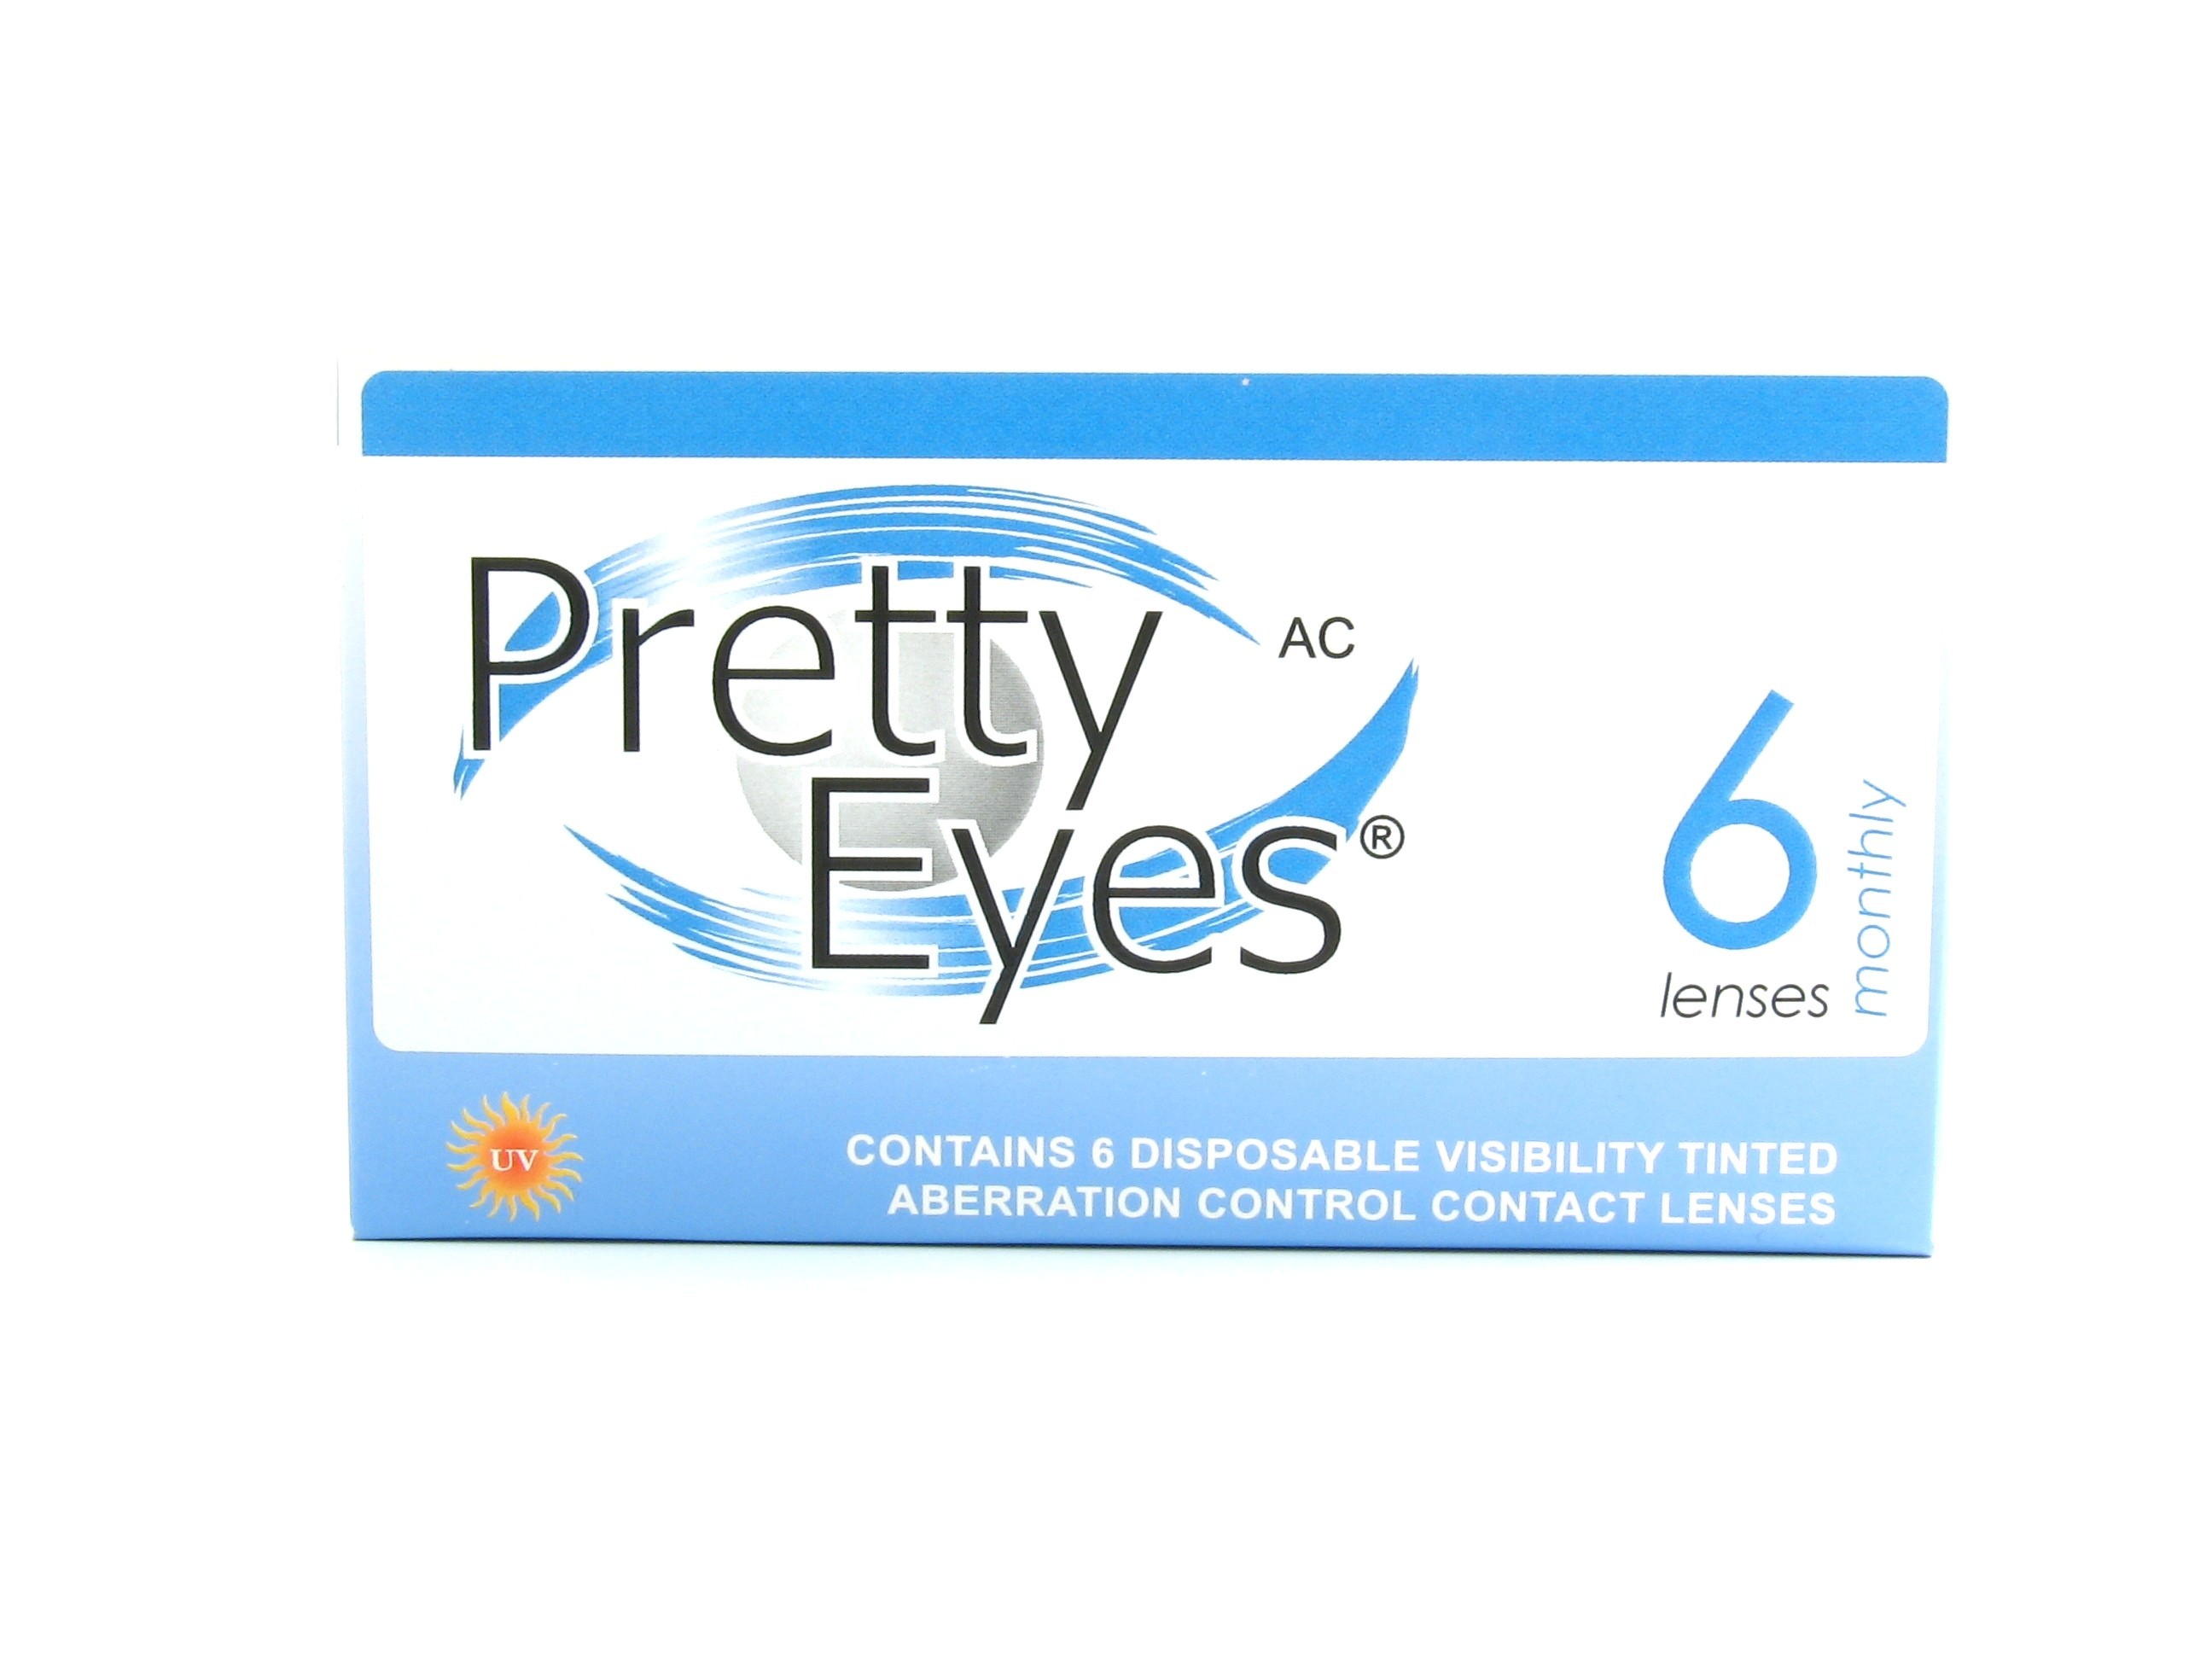 Pretty Eyes AC Monthly Clear 1 tk